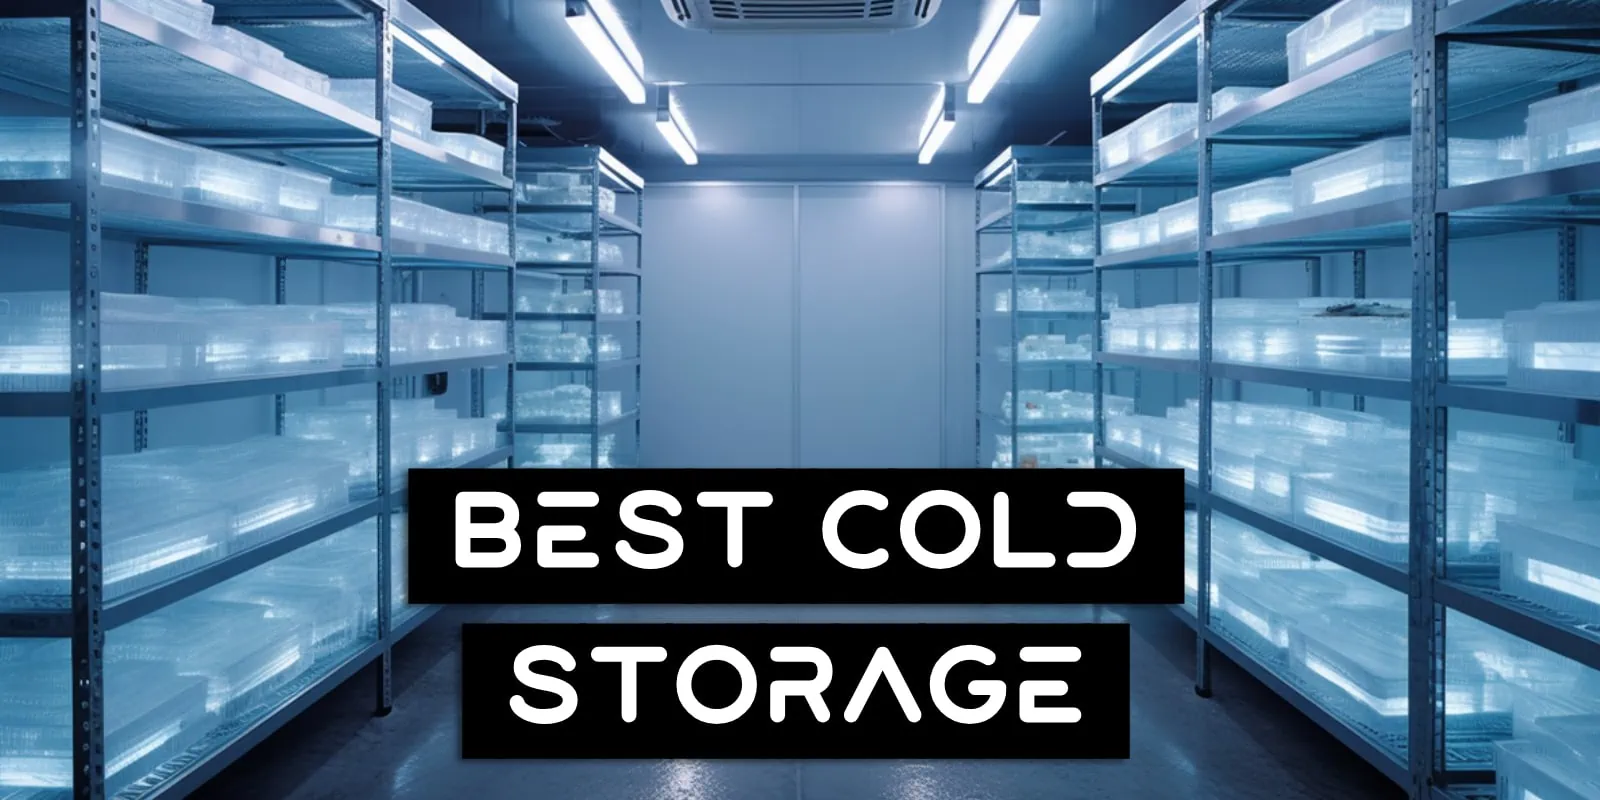 Best Cold Storage Wallet